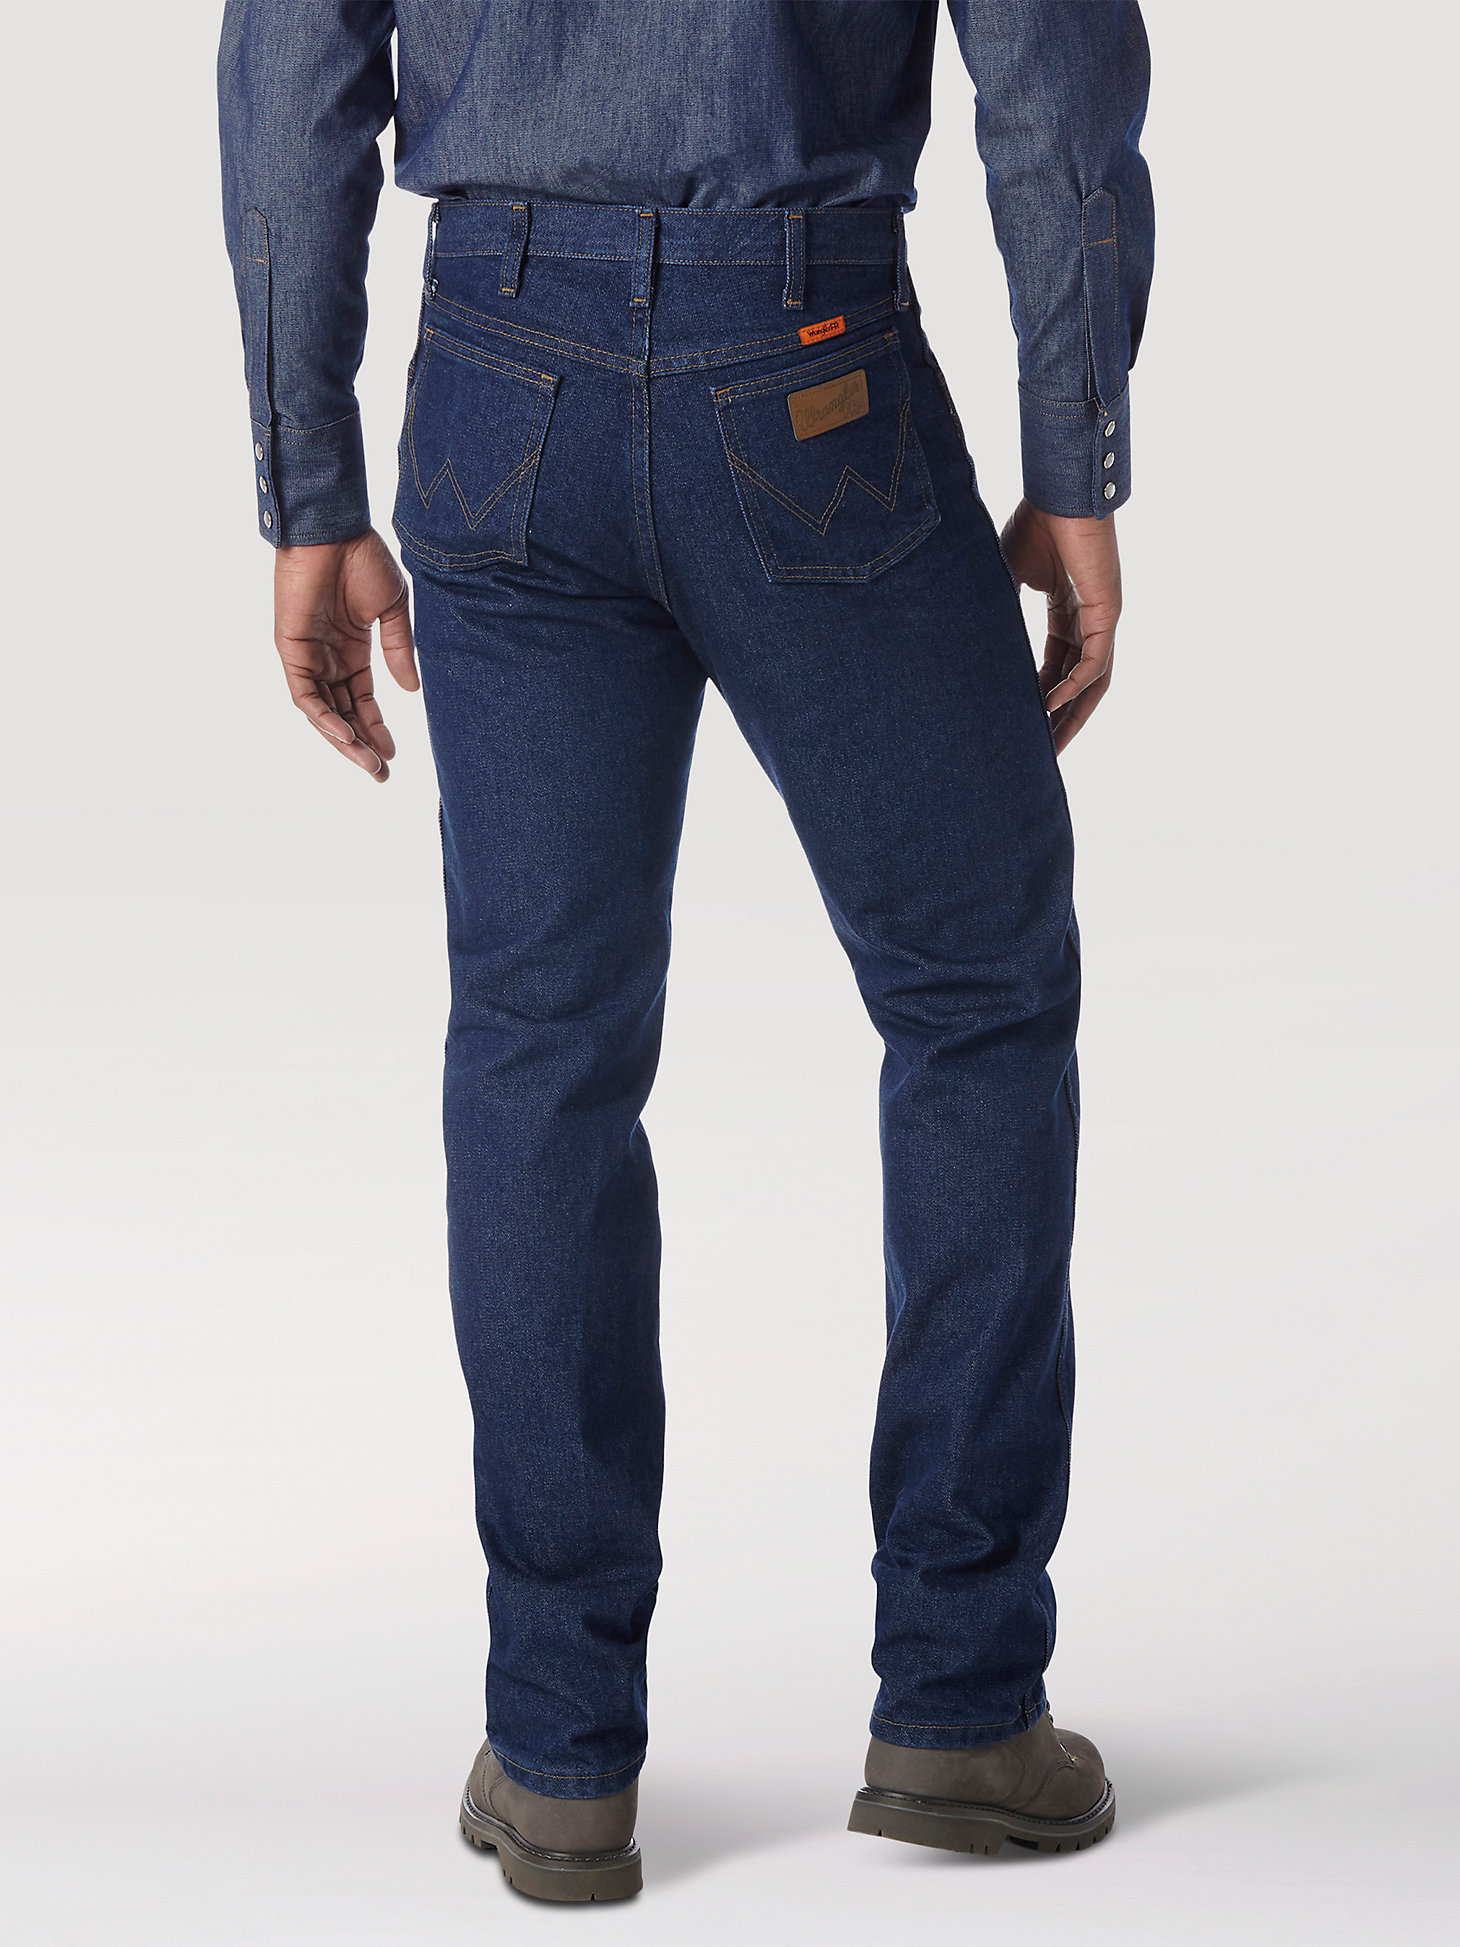 Wrangler® FR Flame Resistant Original Fit Jean